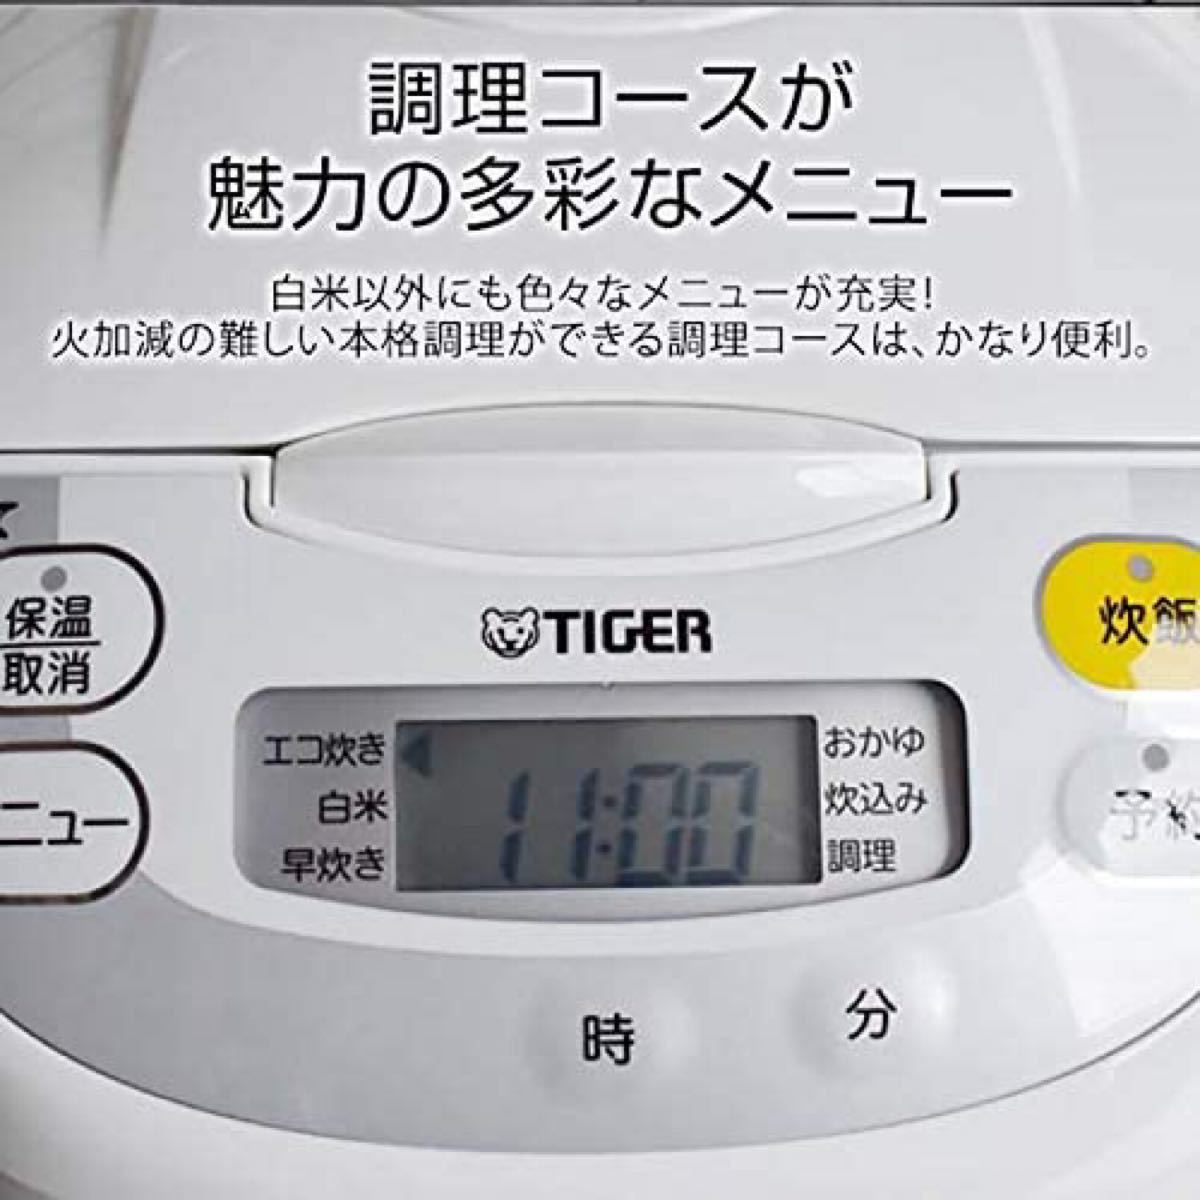 タイガー魔法瓶(TIGER)炊飯器 1升 マイコン ホワイト JBH-G181W